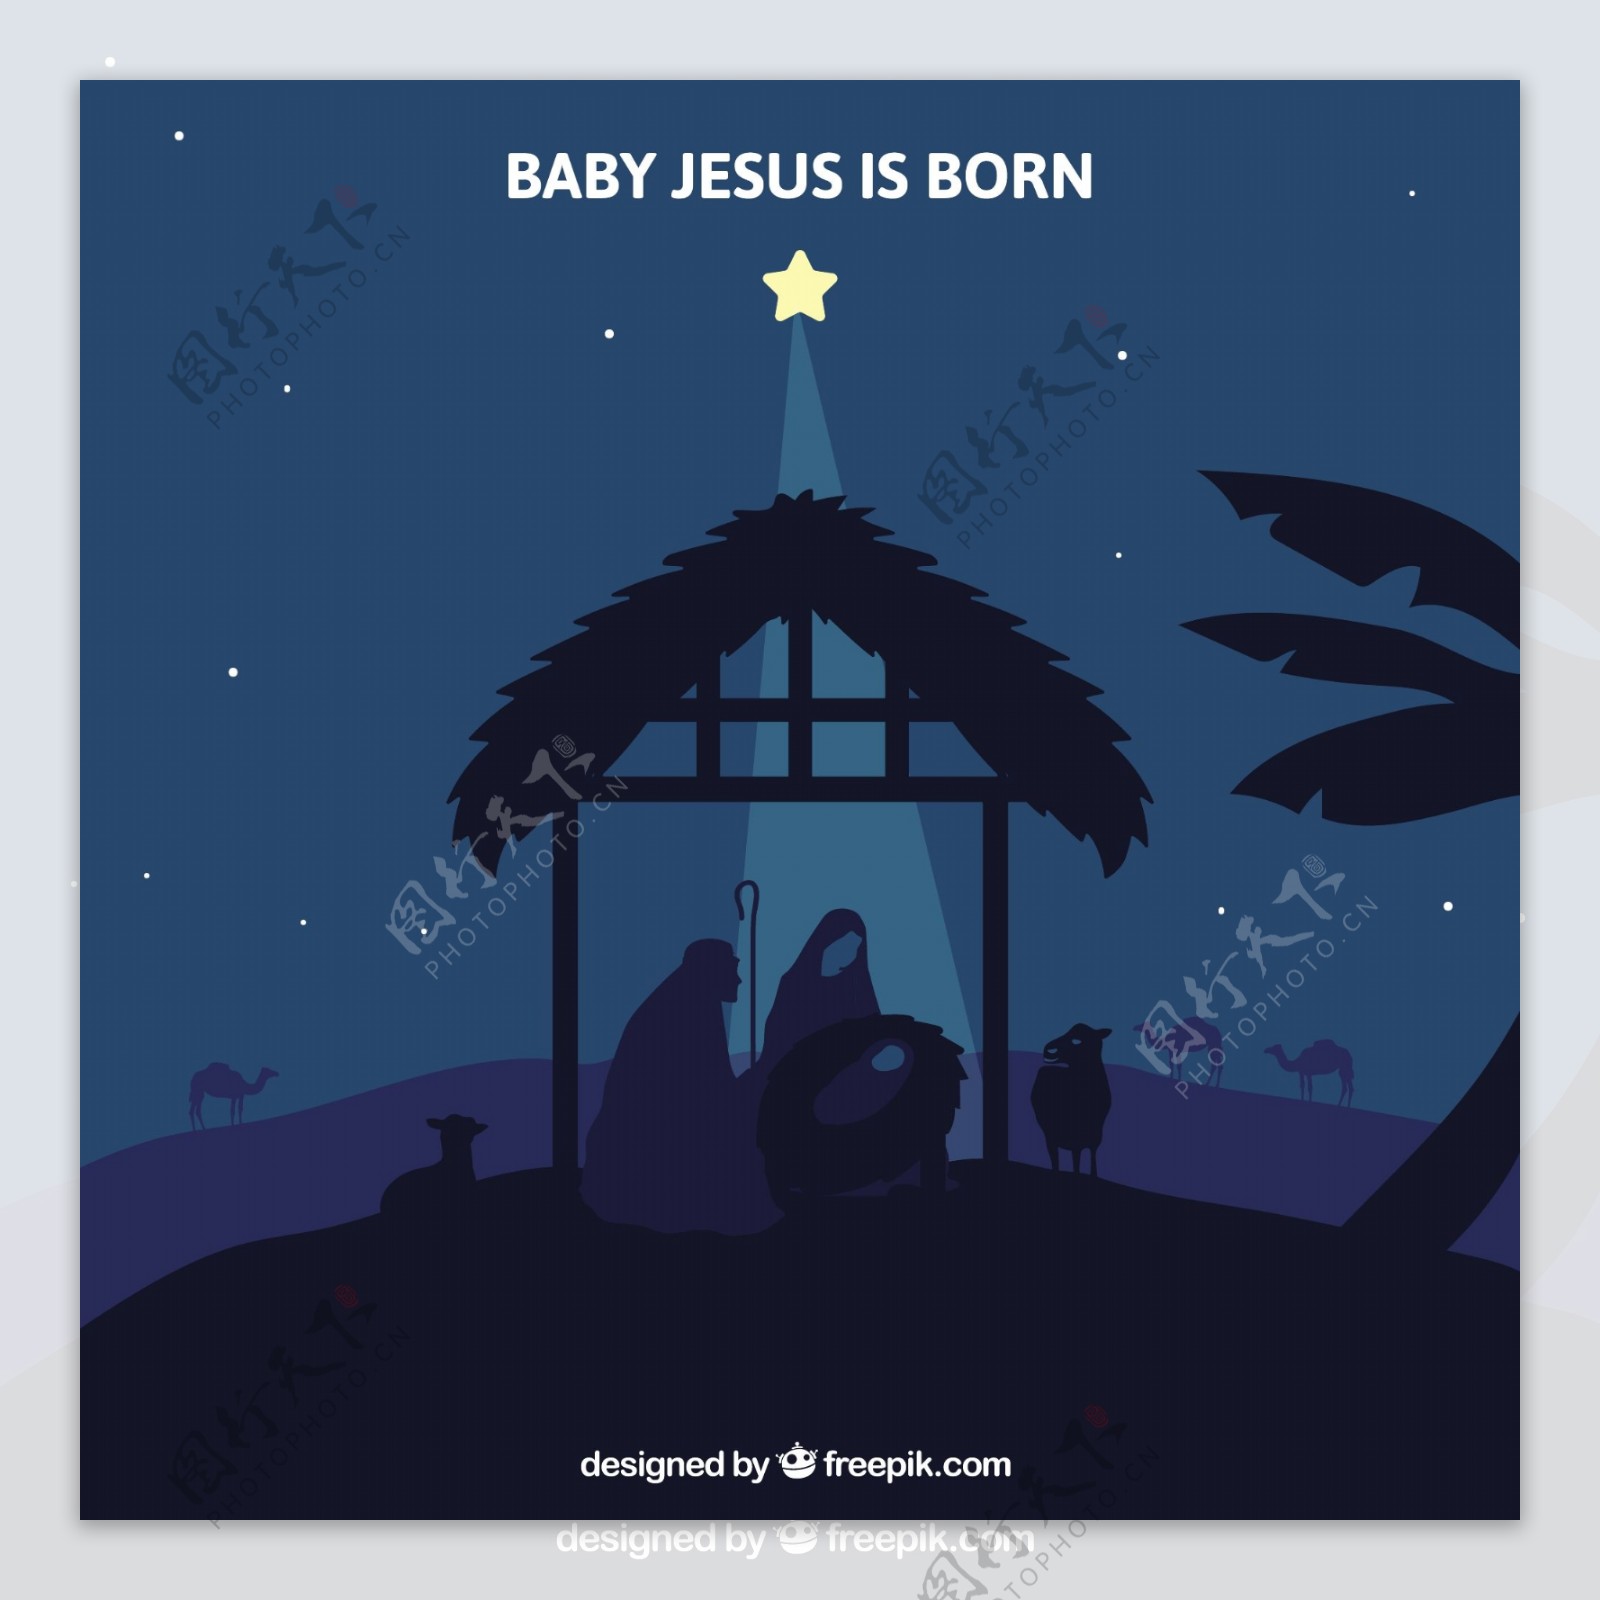 夜星照亮了基督诞生的场景的背景